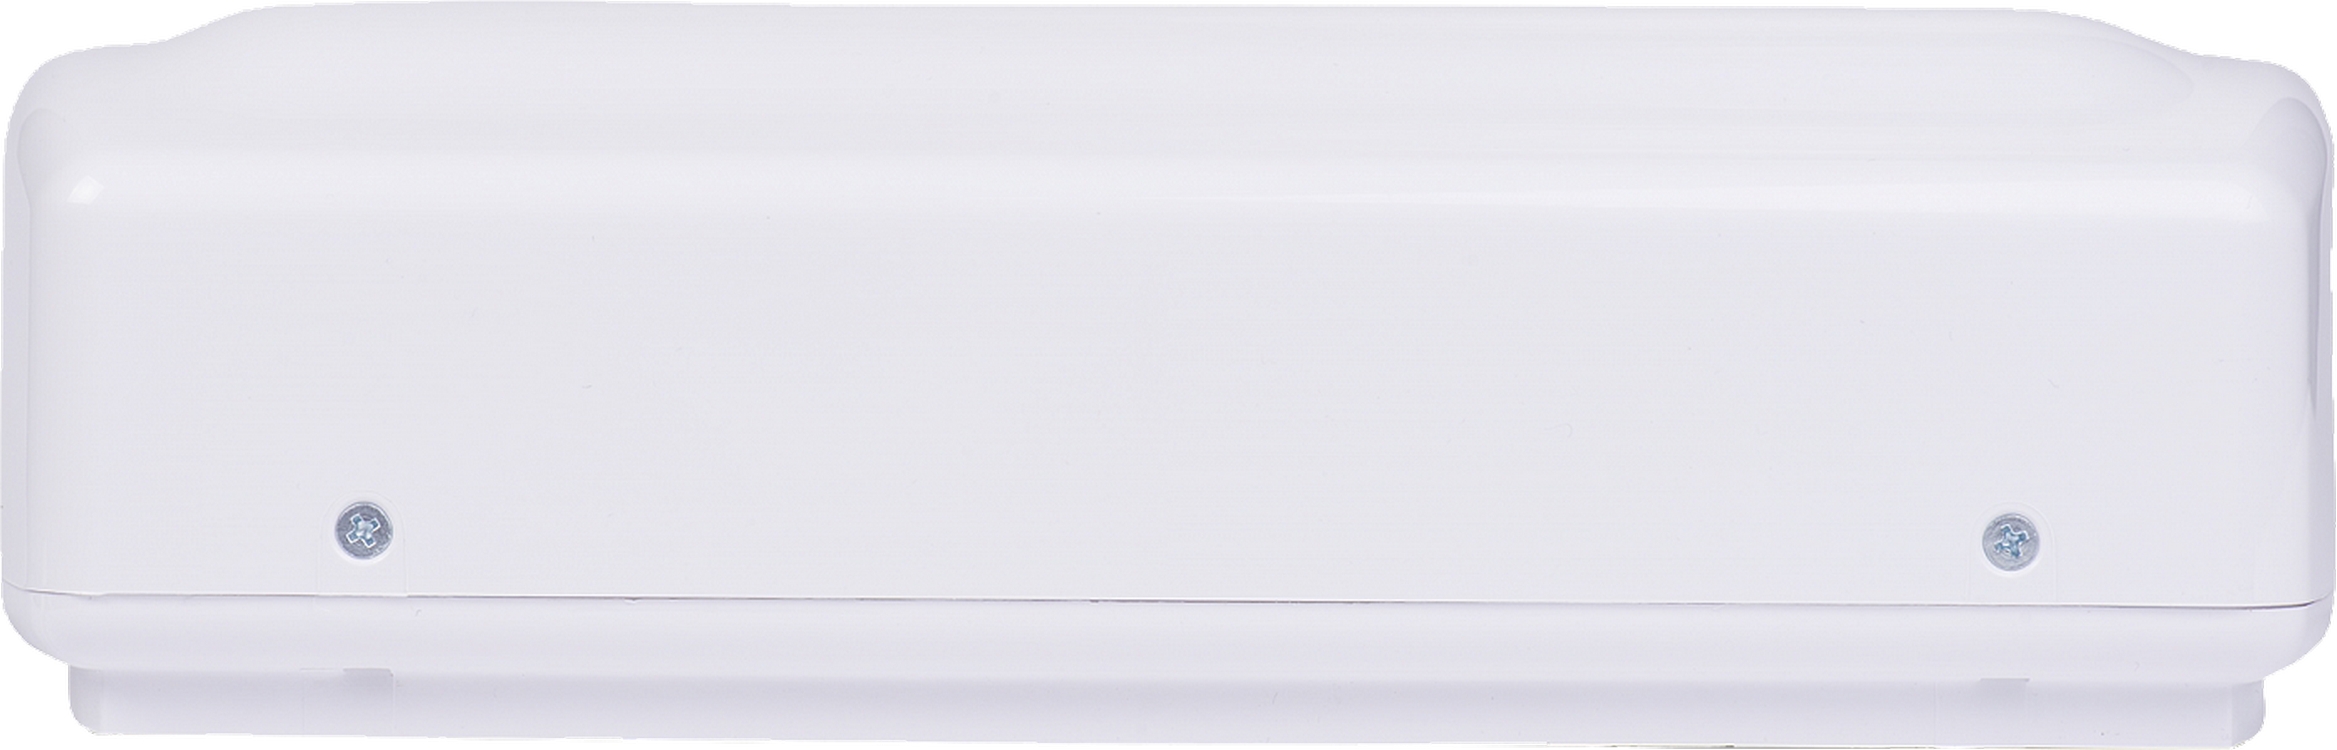 Проточный водонагреватель Atmor Basic 3,5 KW Tap обзор - фото 8